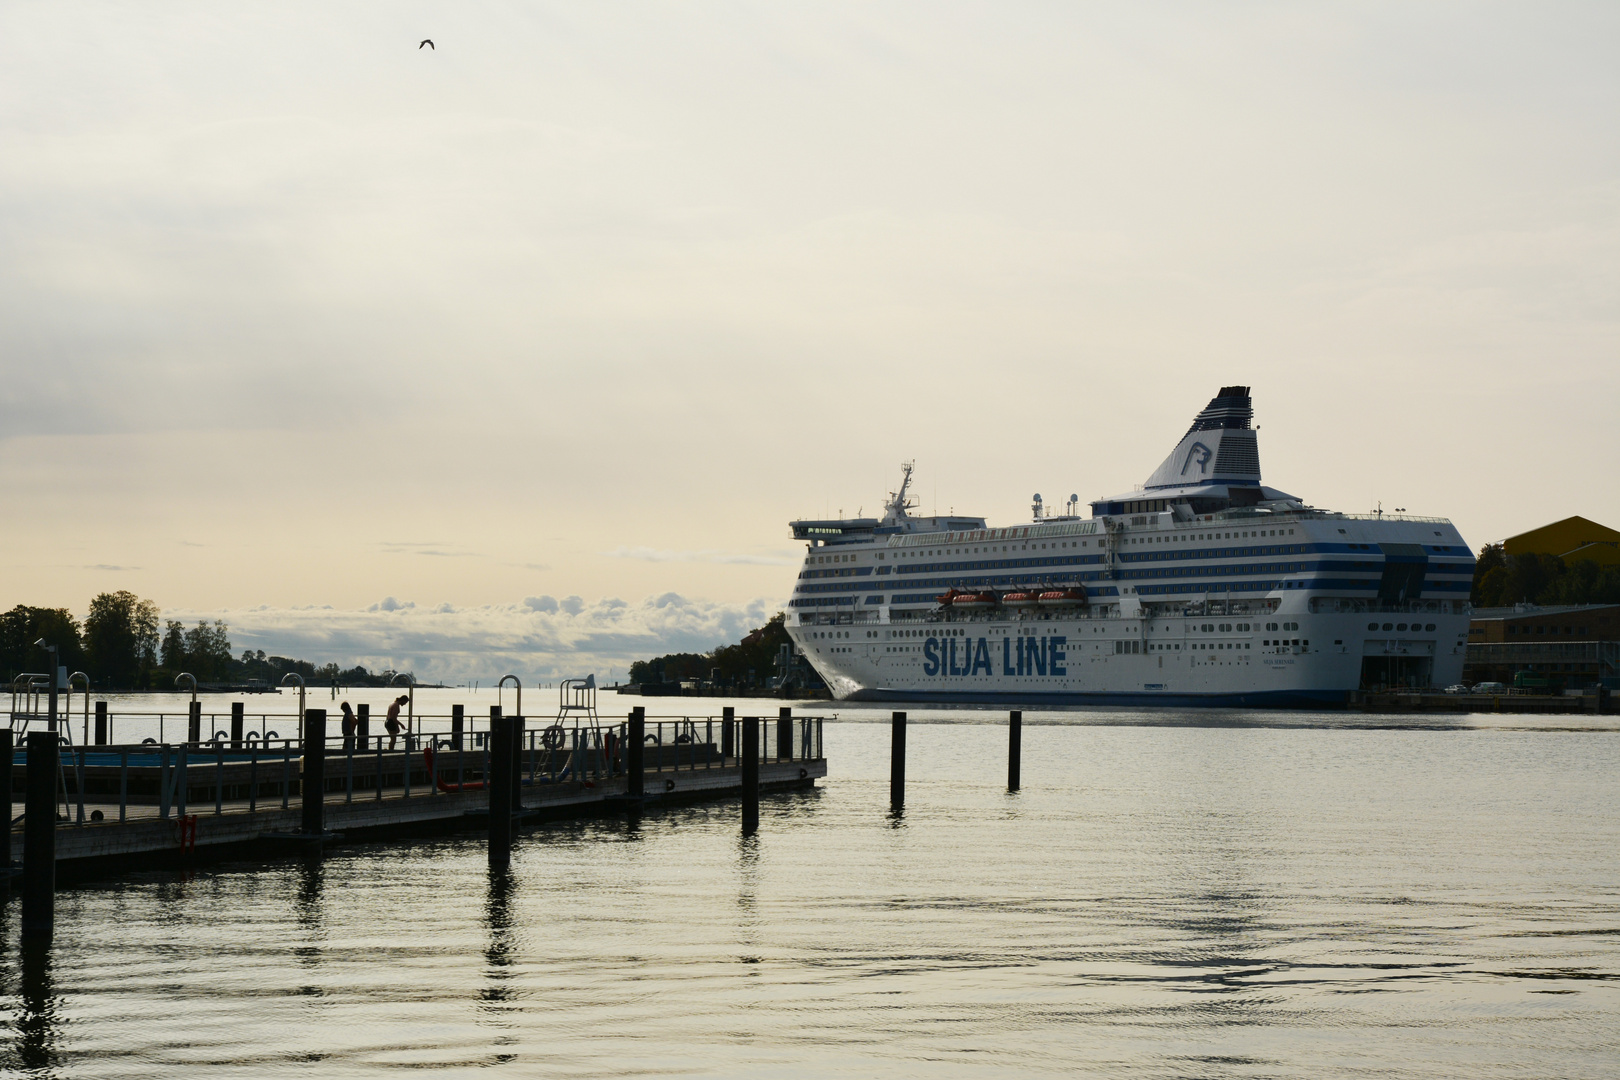 The Silja lines boat on the Helsinki harbor 